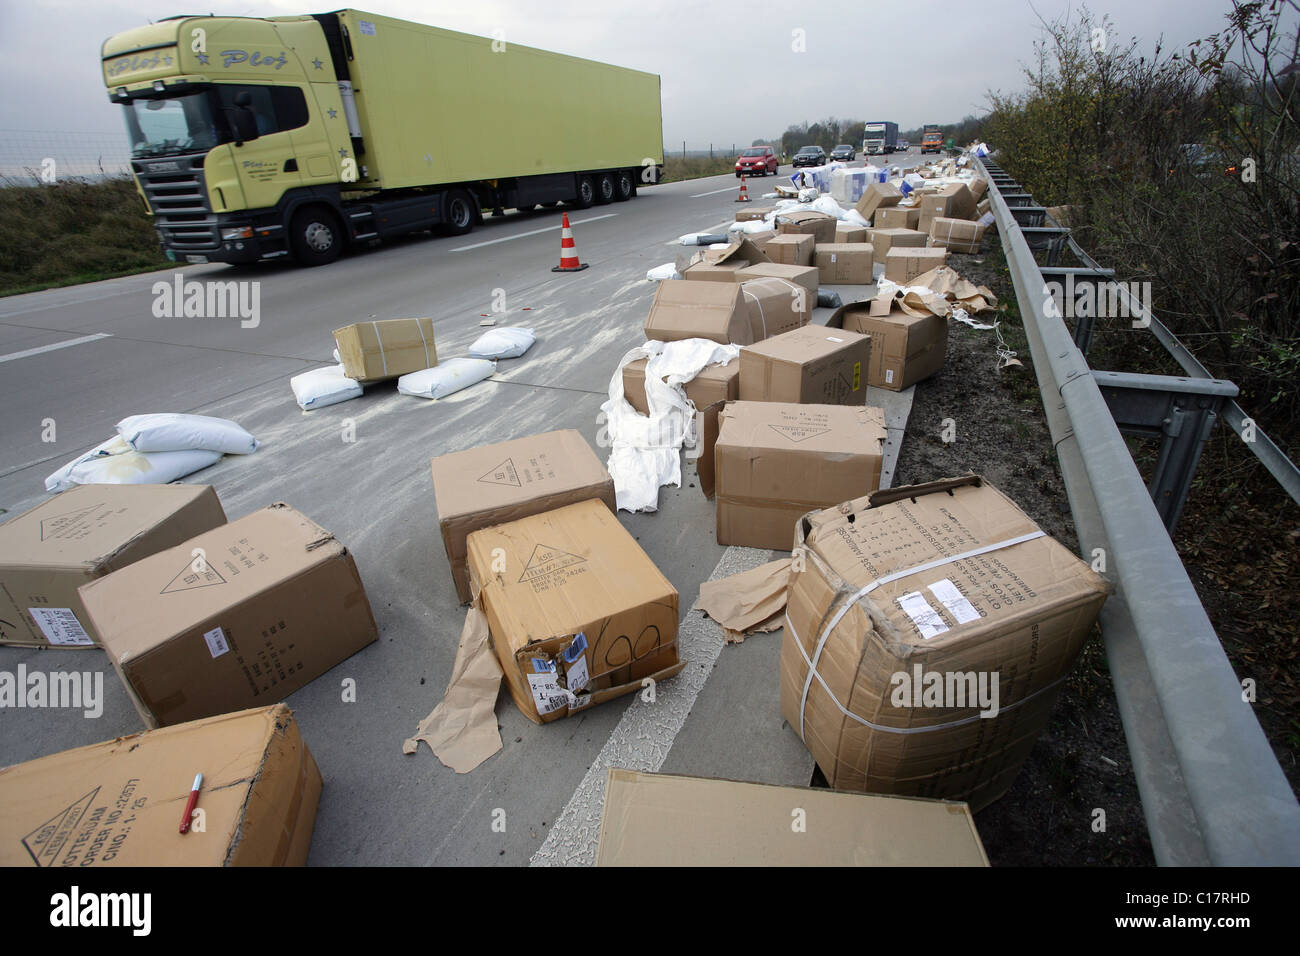 Un camion qui a perdu son chargement sur l'autoroute 61 entre Mendig et Kruft, Mendig, Rhénanie-Palatinat, Allemagne, Europe Banque D'Images